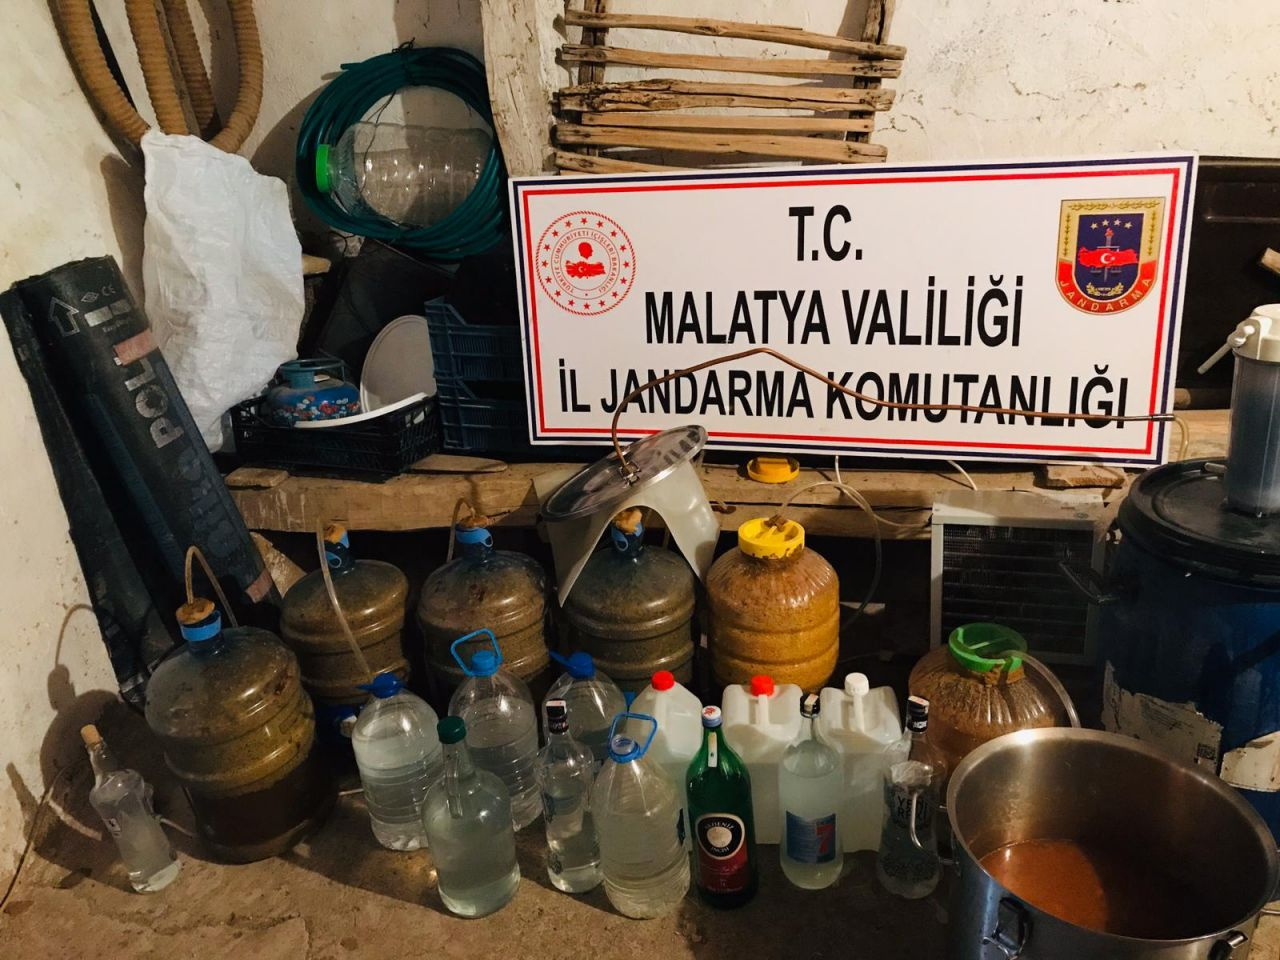 Malatya'da kaçak içki operasyonu